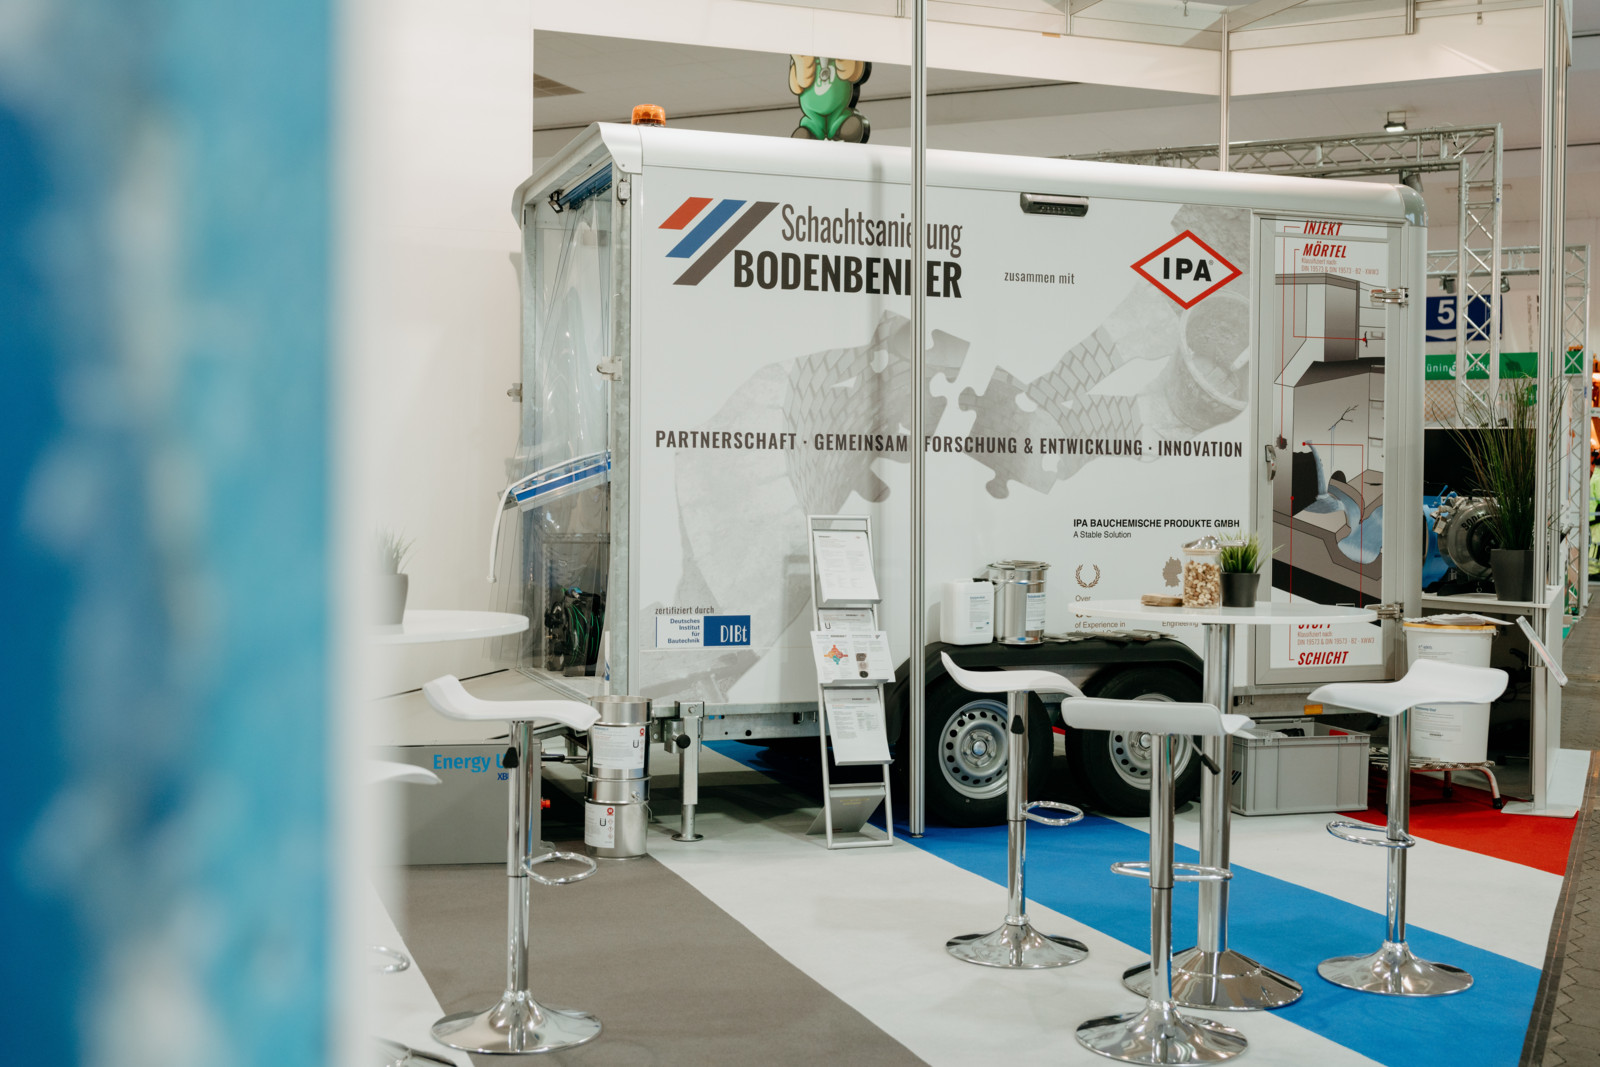 Auf der Ro-Ka-Tech in Kassel, der Fachmesse für den Bereich der unterirdischen Abwasserinfrastruktur, traten im Mai die Unternehmen Bodenbender GmbH und IPA Bauchemische Produkte GmbH bereits gemeinsam auf. 